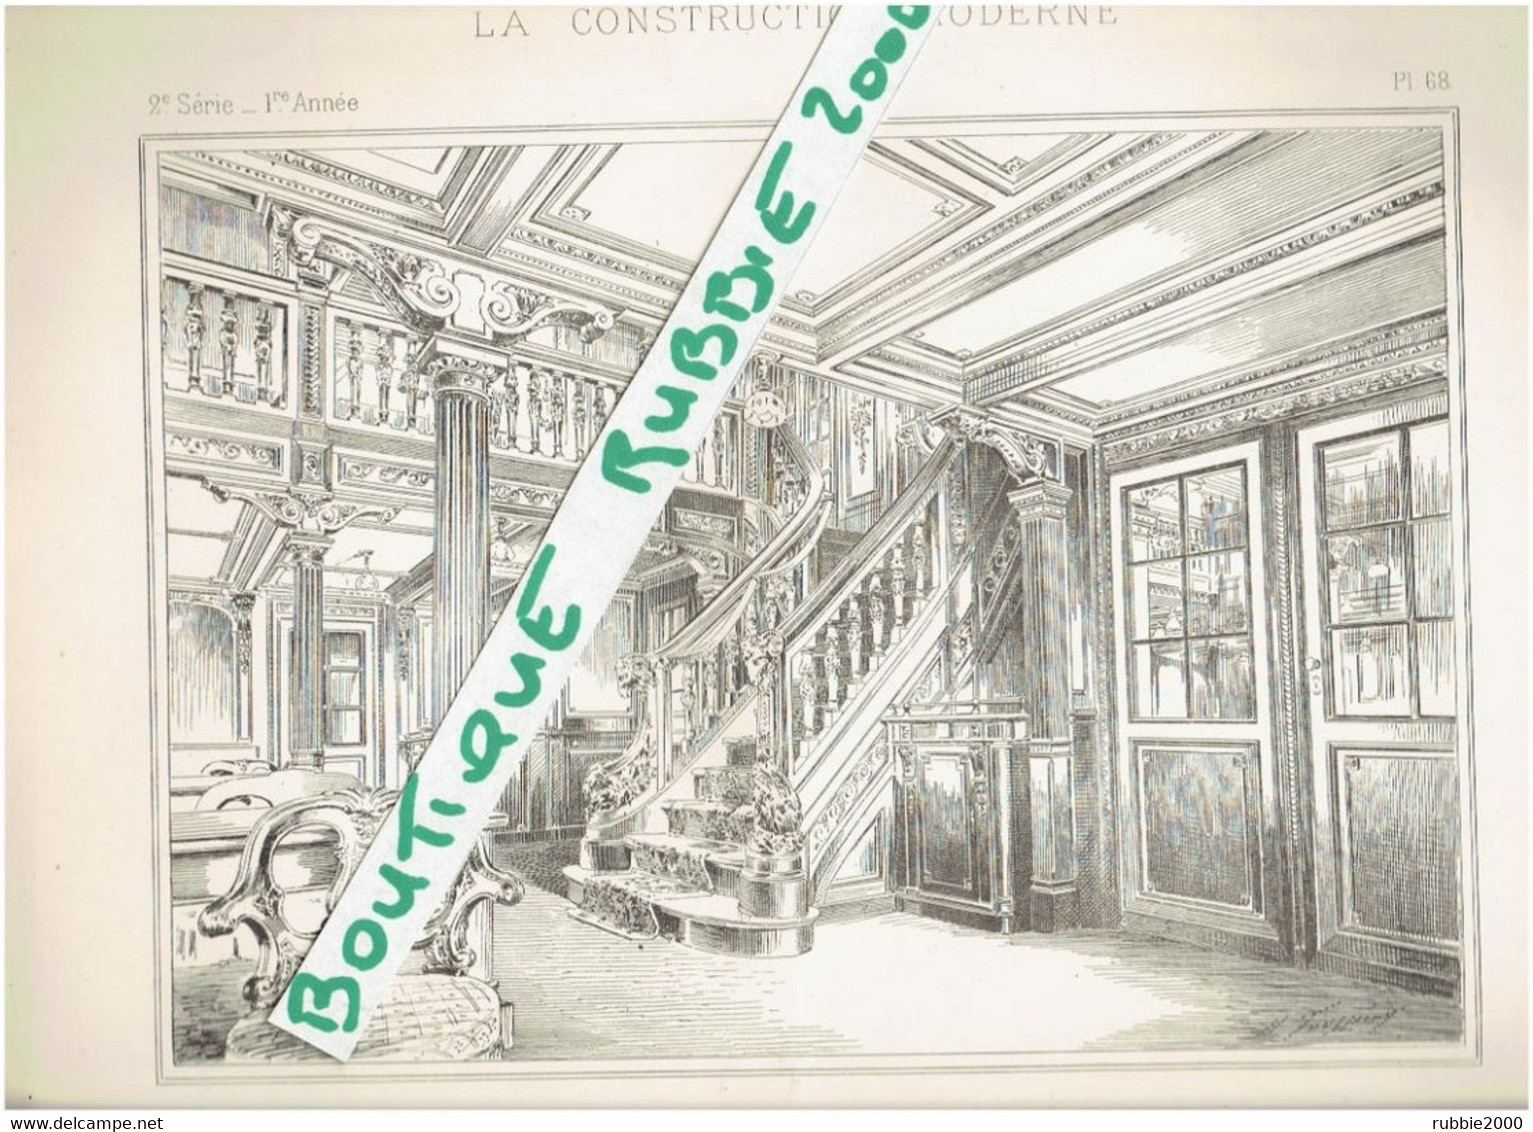 5 DESSINS 1895 PAQUEBOT LE CHILI 1894 1927 AMENAGEMENTS INTERIEURS DU NAVIRE A SON LANCEMENT ARCHITECTE M. GIRETTE - Arte